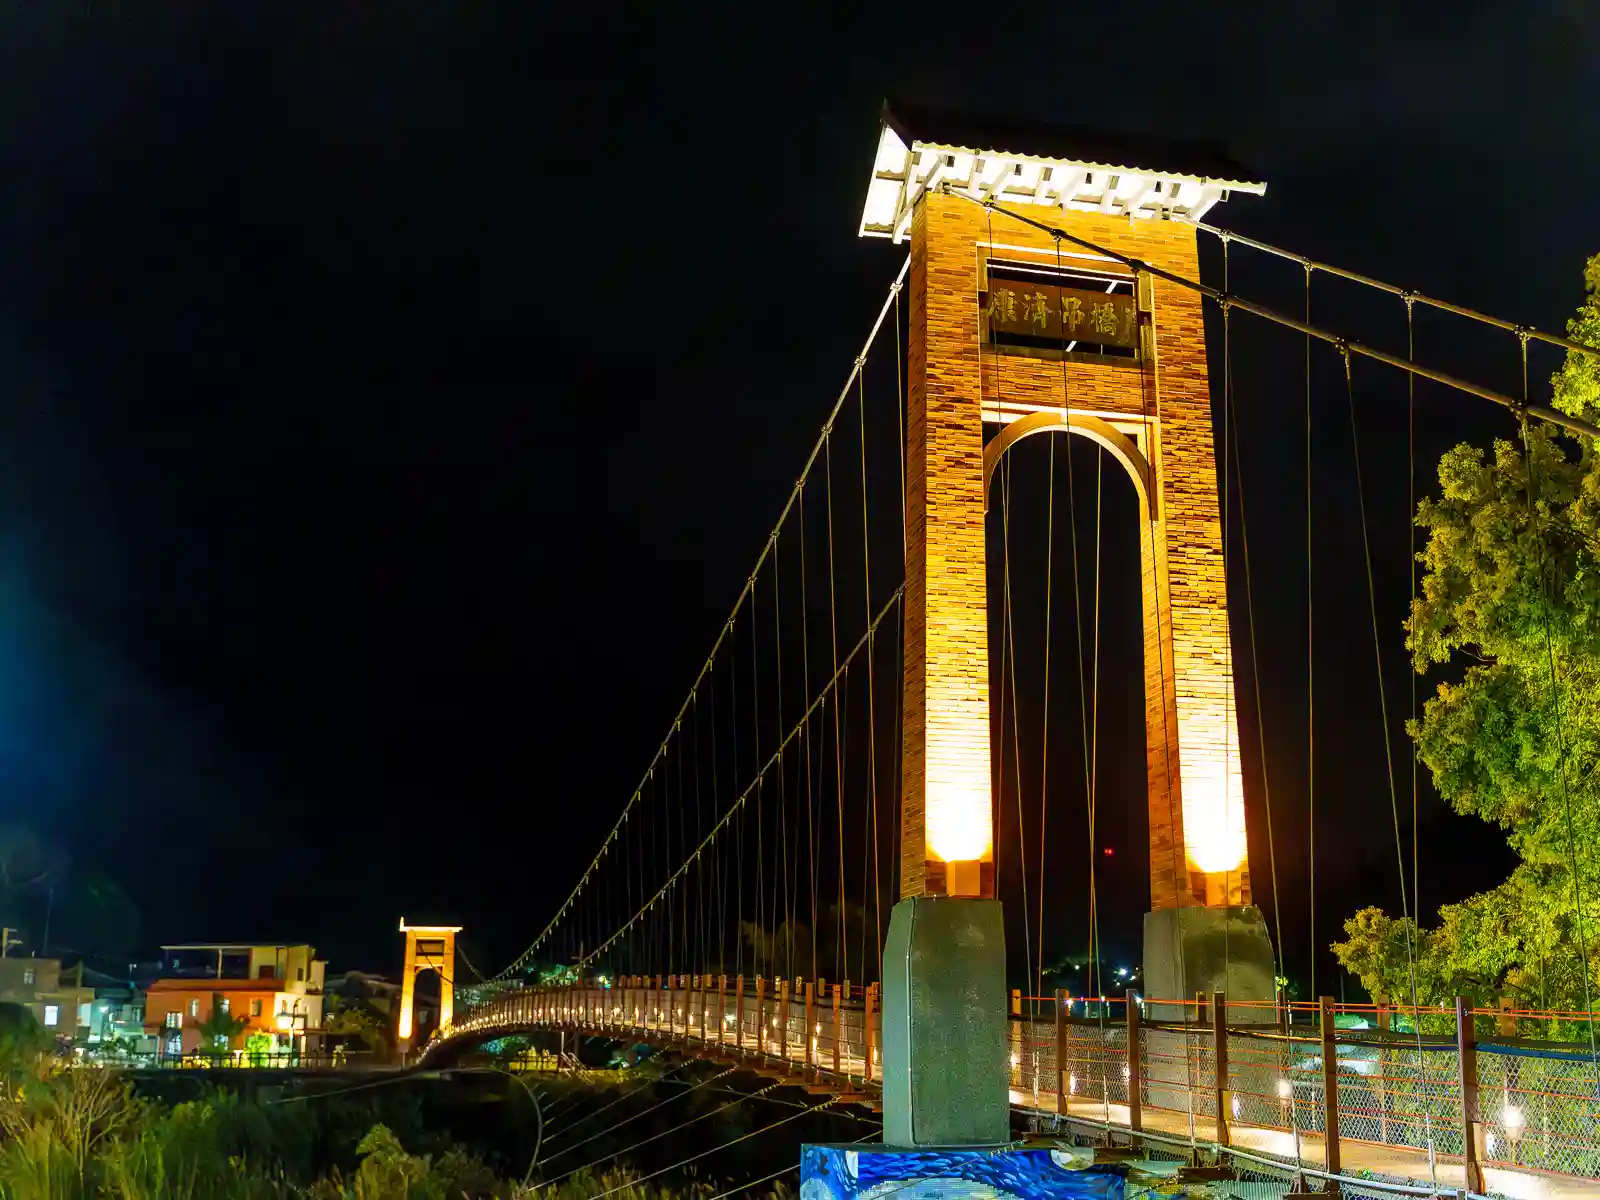 Kangji Suspension Bridge is seen illuminated at night.